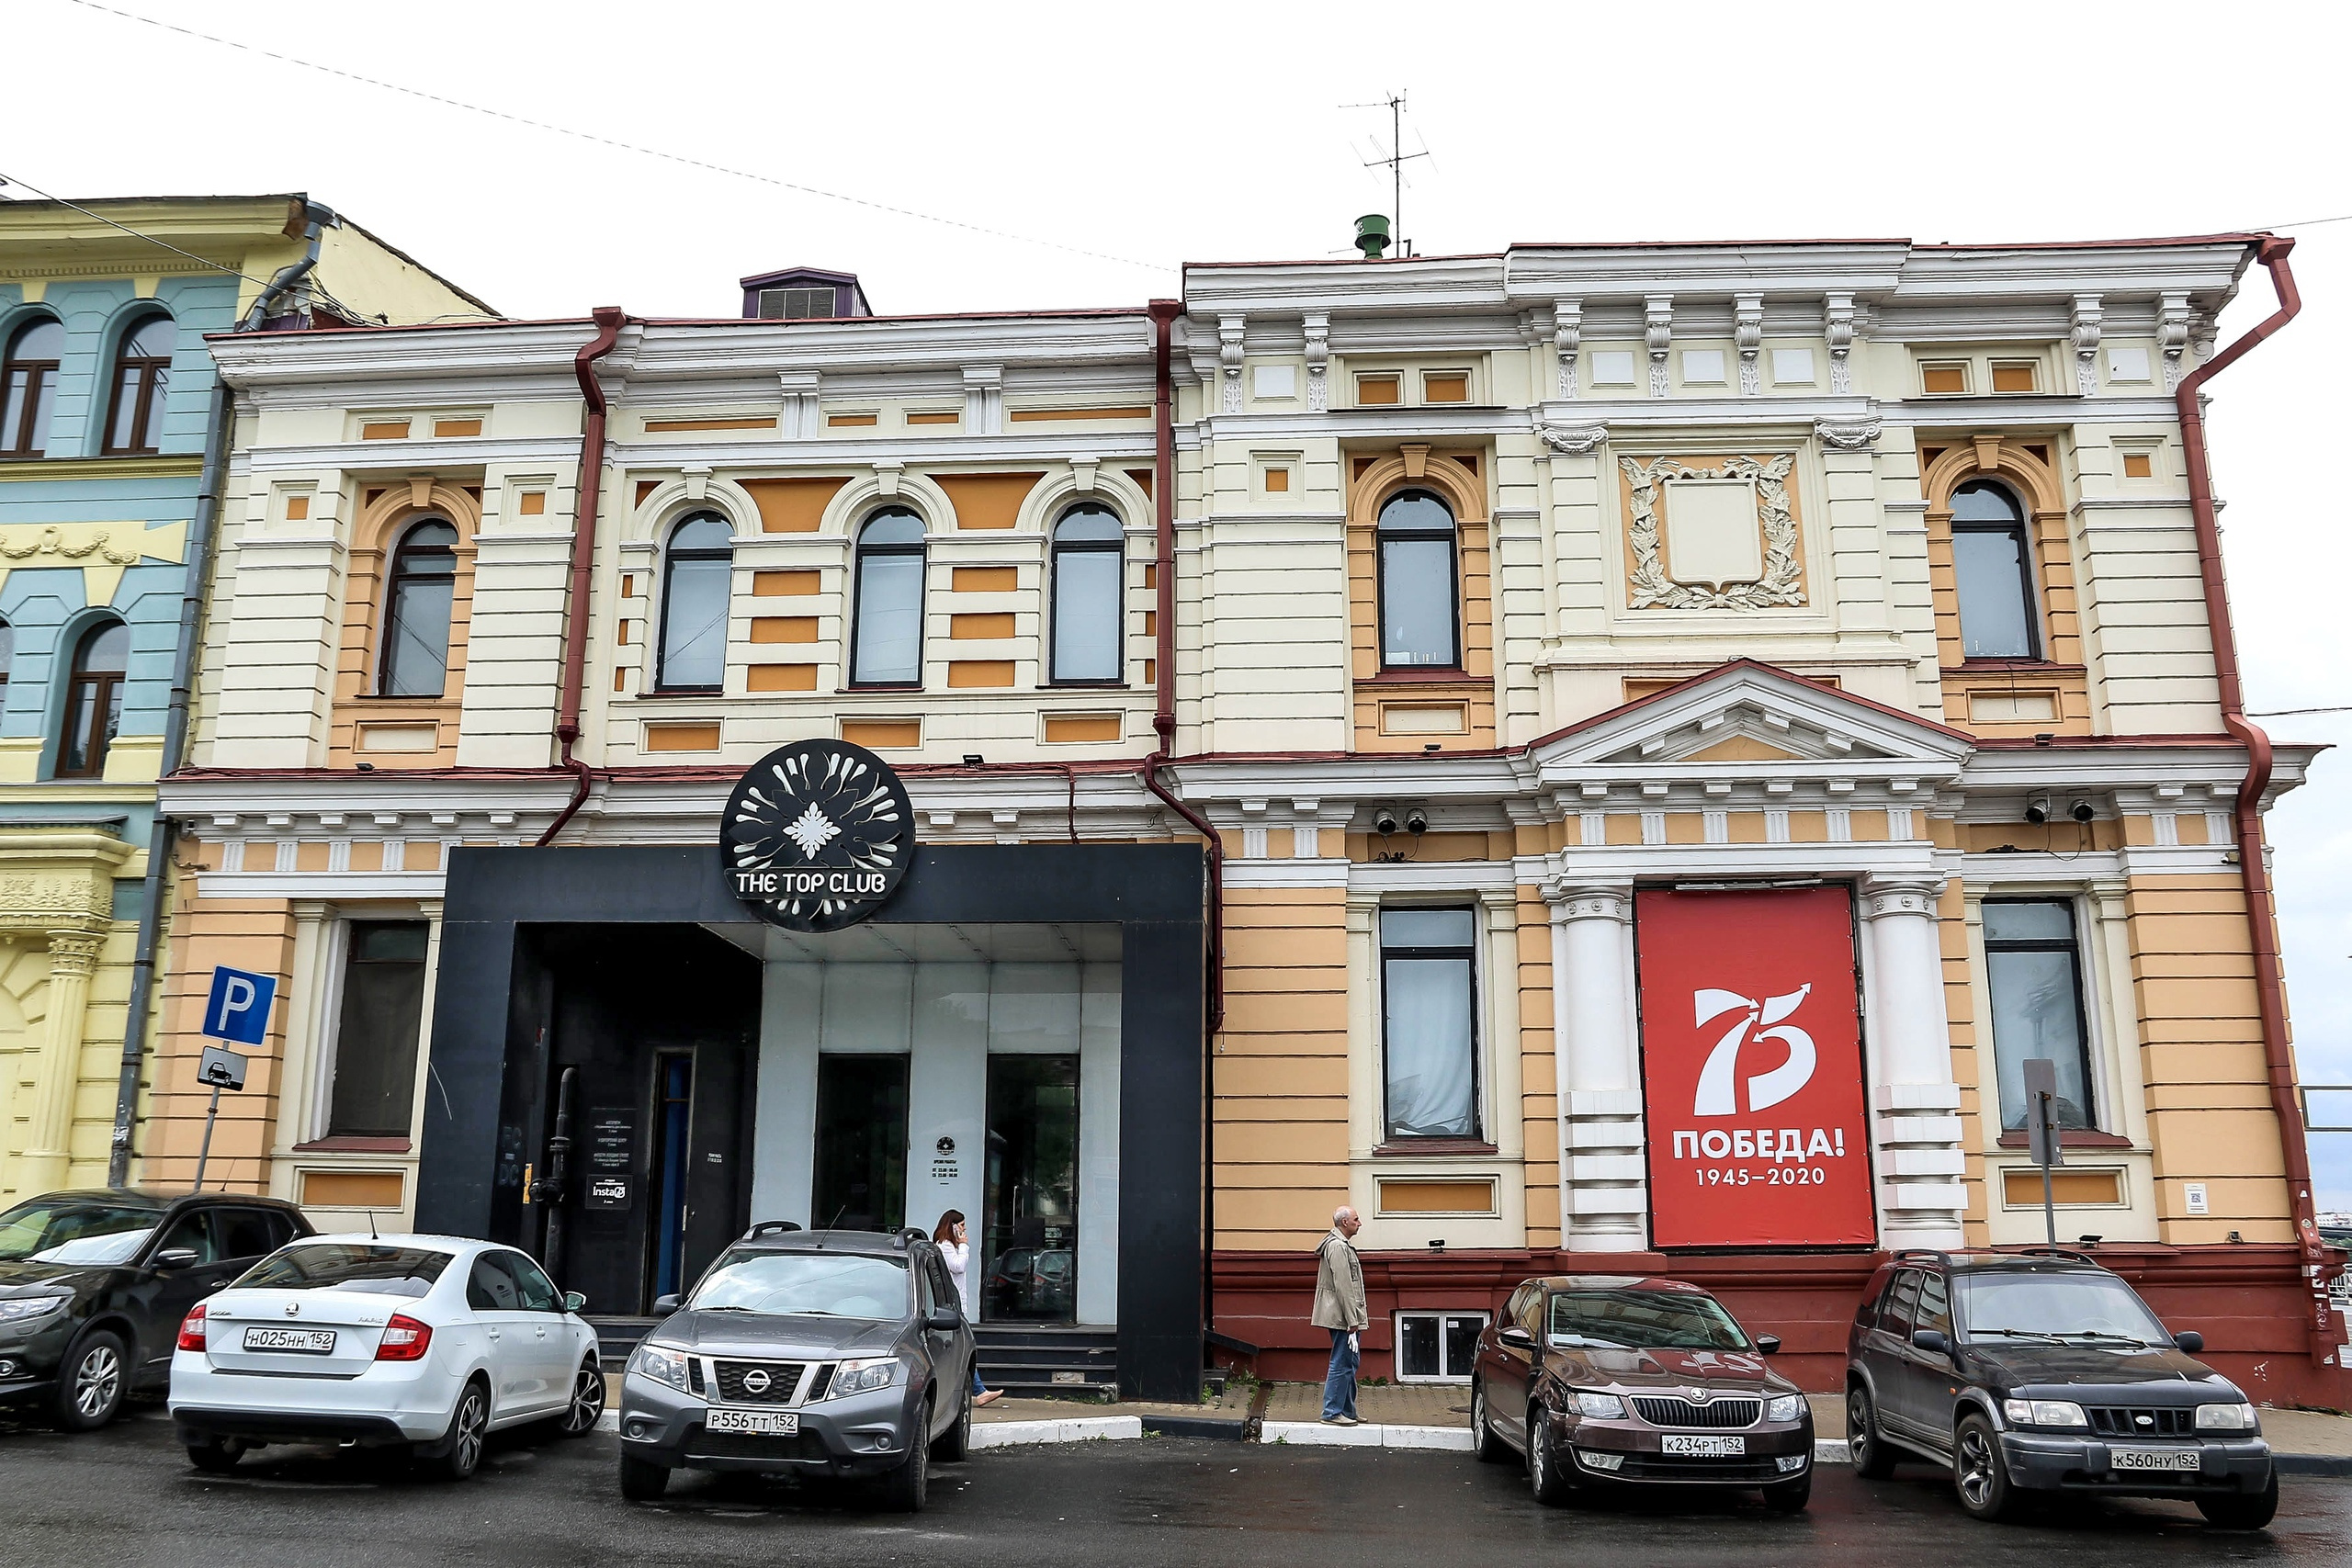 «Уходит эпоха, уходит легенда». В центре Нижнего Новгорода закрывается популярный ночной клуб